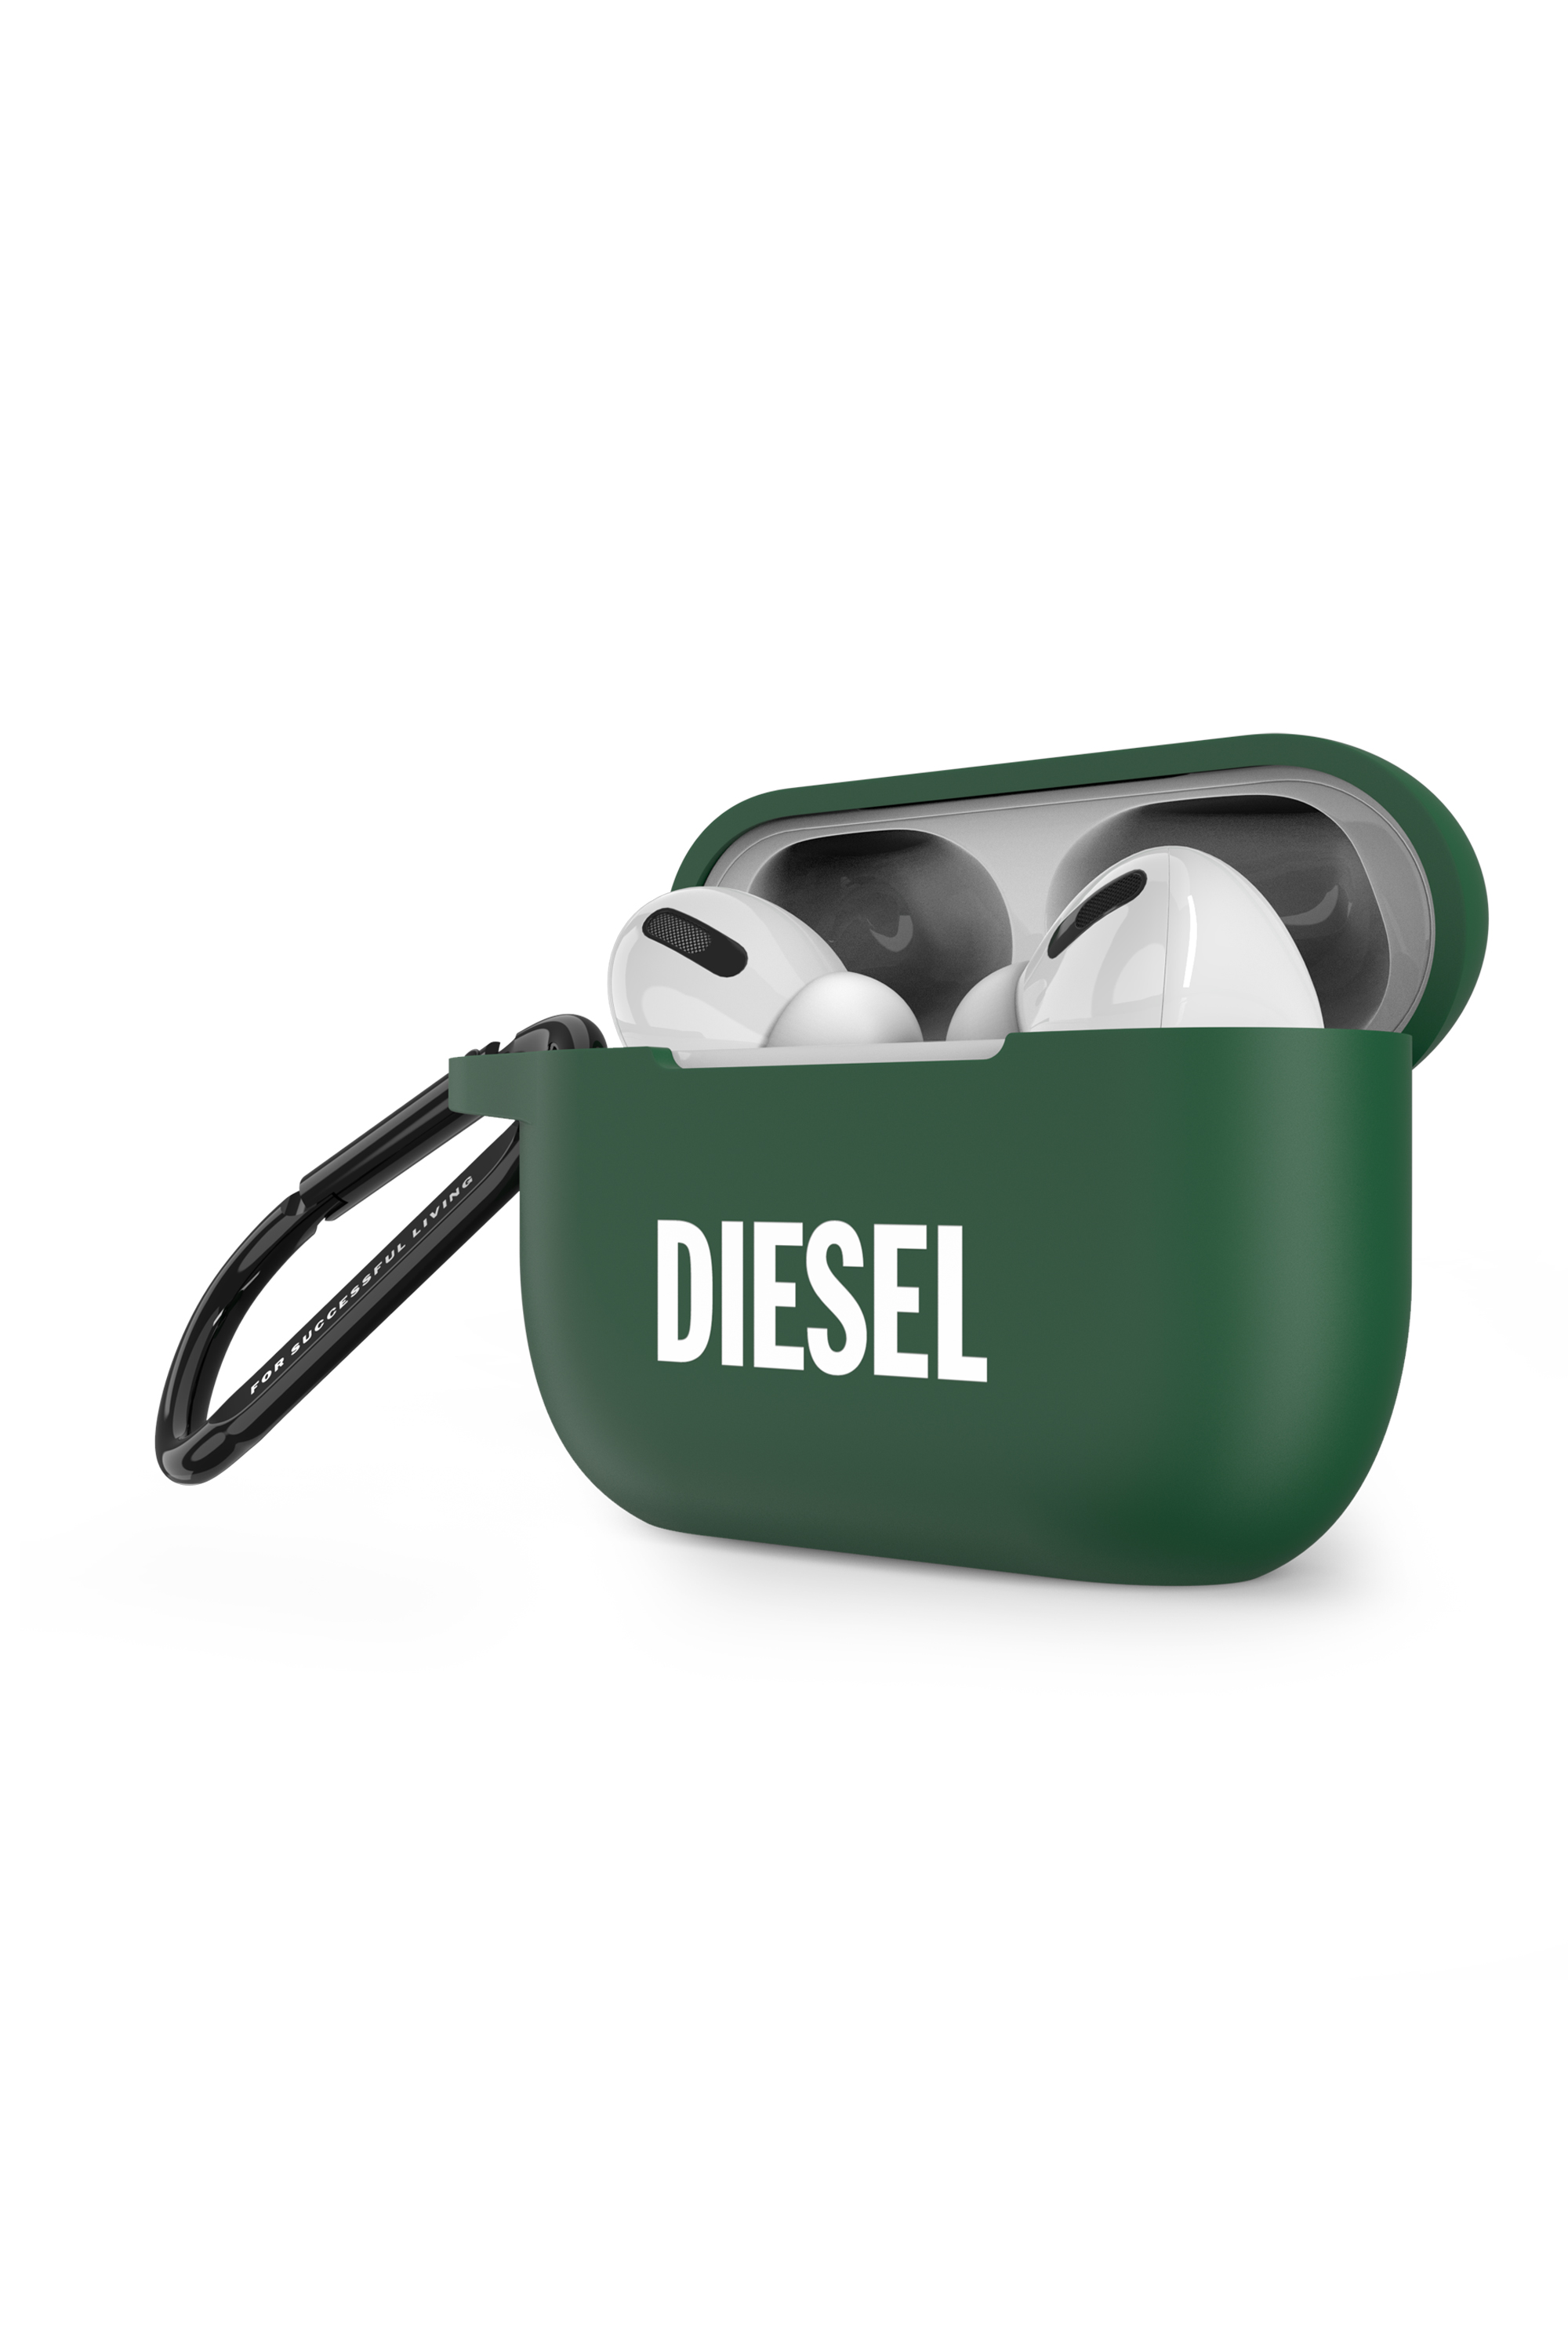 Diesel - 49671 MOULDED CASE, Green - Image 3